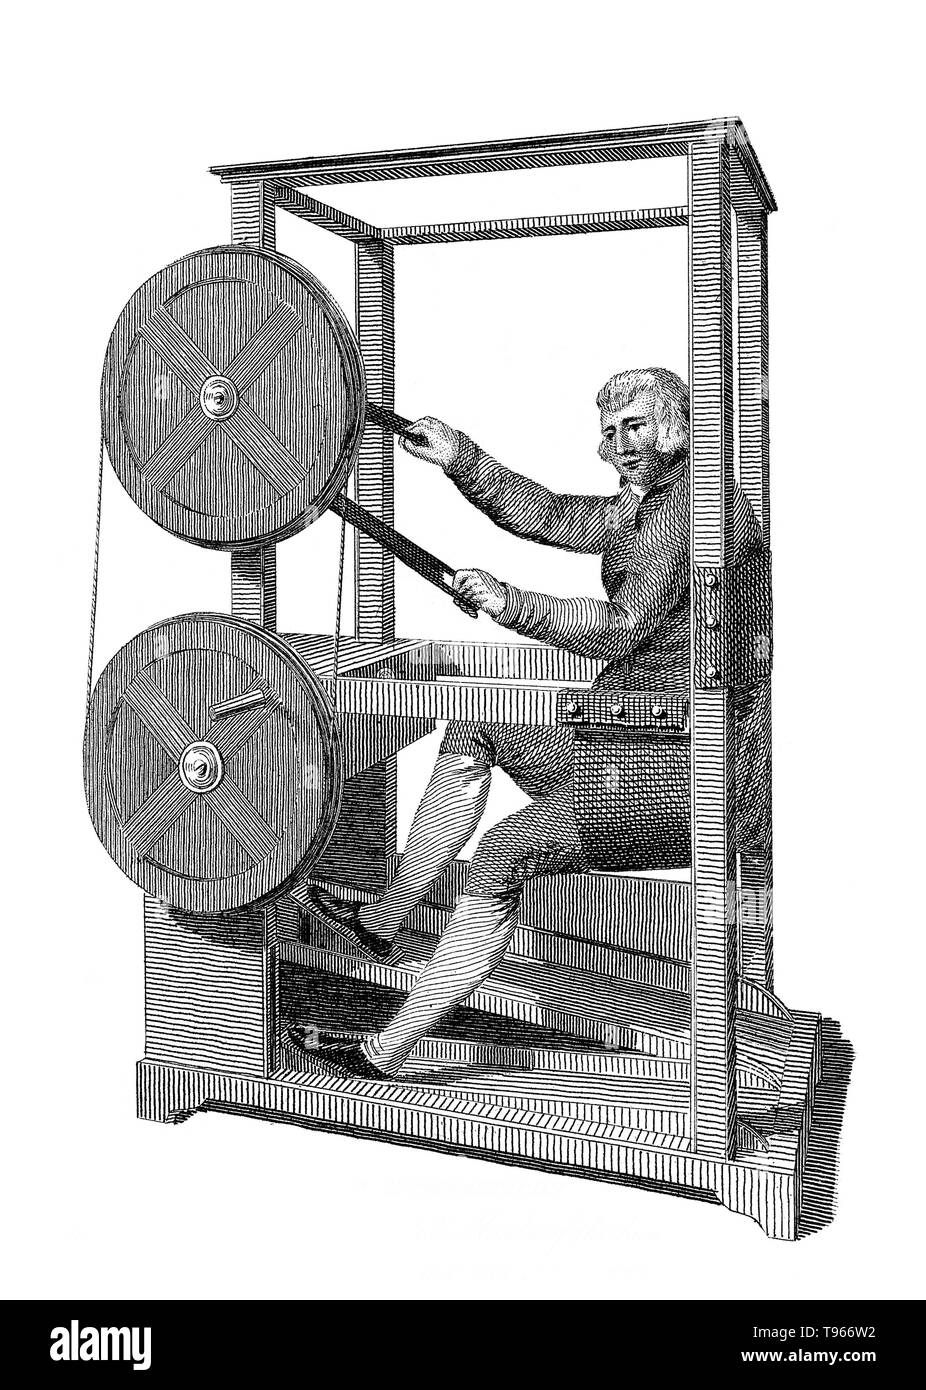 Die Gymnasticon war eine frühe Übung Maschine ähnelt einem stationären Fahrrad, im Jahr 1796 erfunden von Francis Lowndes. In seinem Patent, Lowndes beschrieben die Maschine als, einfach darauf zu geben und zu Bewegung und Übung, freiwillig oder unfreiwillig, der Extremitäten, Gelenke und Muskeln des menschlichen Körpers. Die Gymnasticon hing von einer Reihe von Schwungrädern, dass die hölzerne Tritte für die Füße zu Kurbeln für die Hände, die sich gegenseitig fahren könnte oder arbeiten unabhängig voneinander angeschlossen. Stockfoto